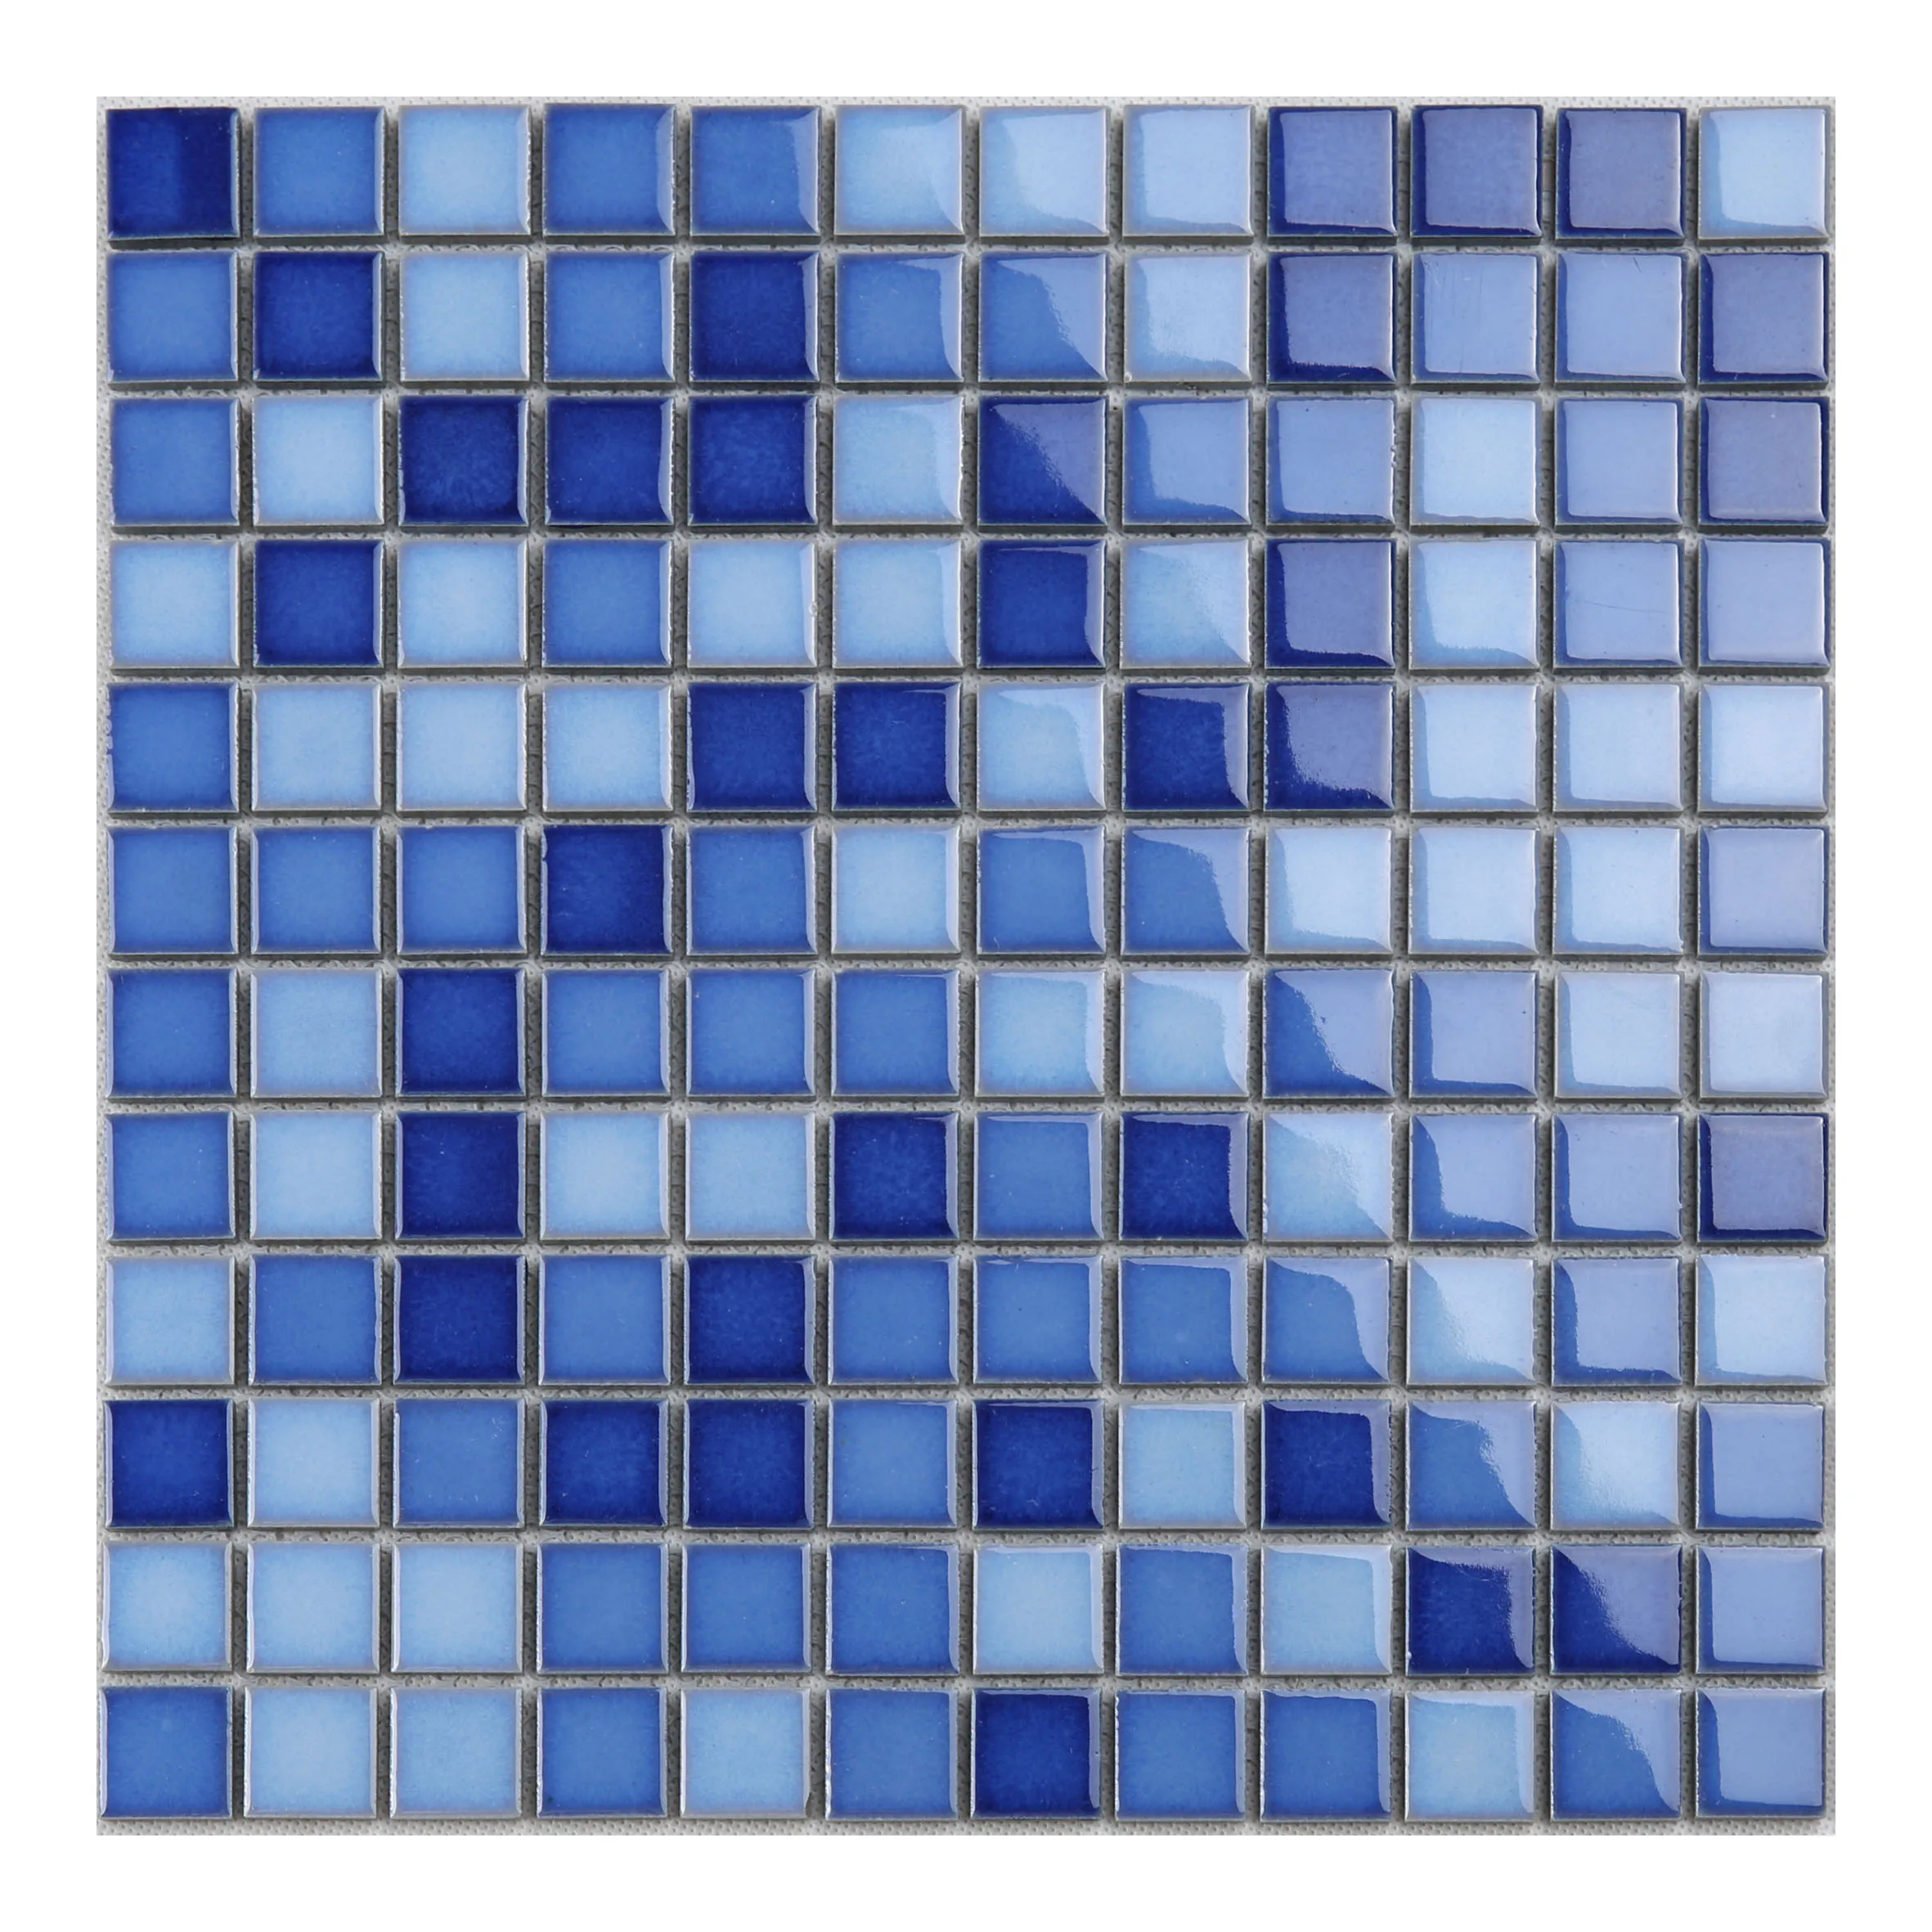 HQT14 2020 Hot Sale Design Ceramic Tiles Exterior Walls Pool Mosaic